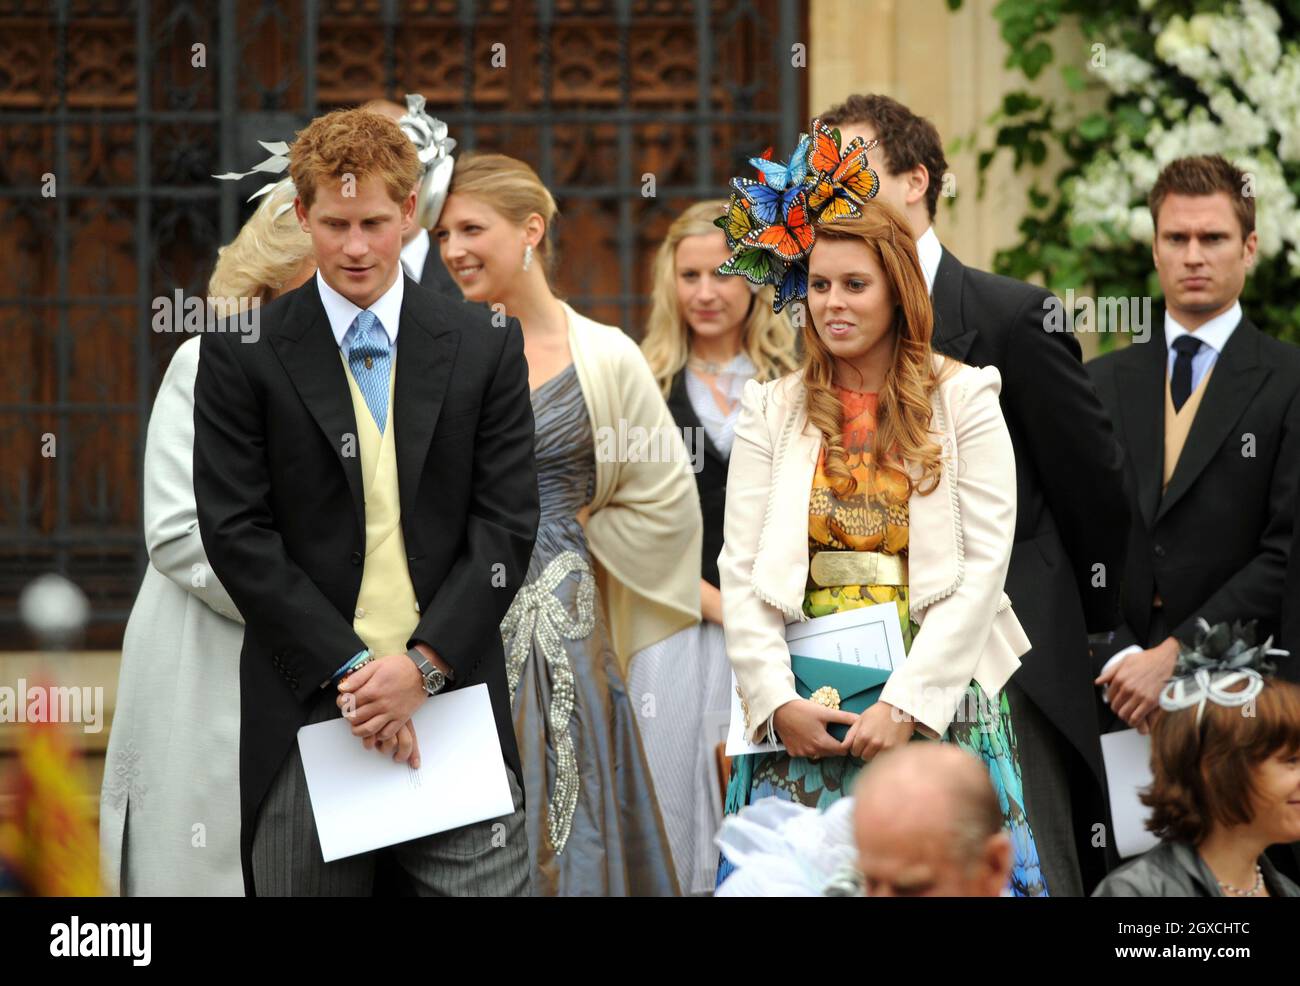 Le prince Harry et la princesse Beatrice quittent la chapelle Saint-Georges après la cérémonie de mariage de Peter Phillips et Autumn Kelly au château de Winsor, à Windsor. Banque D'Images